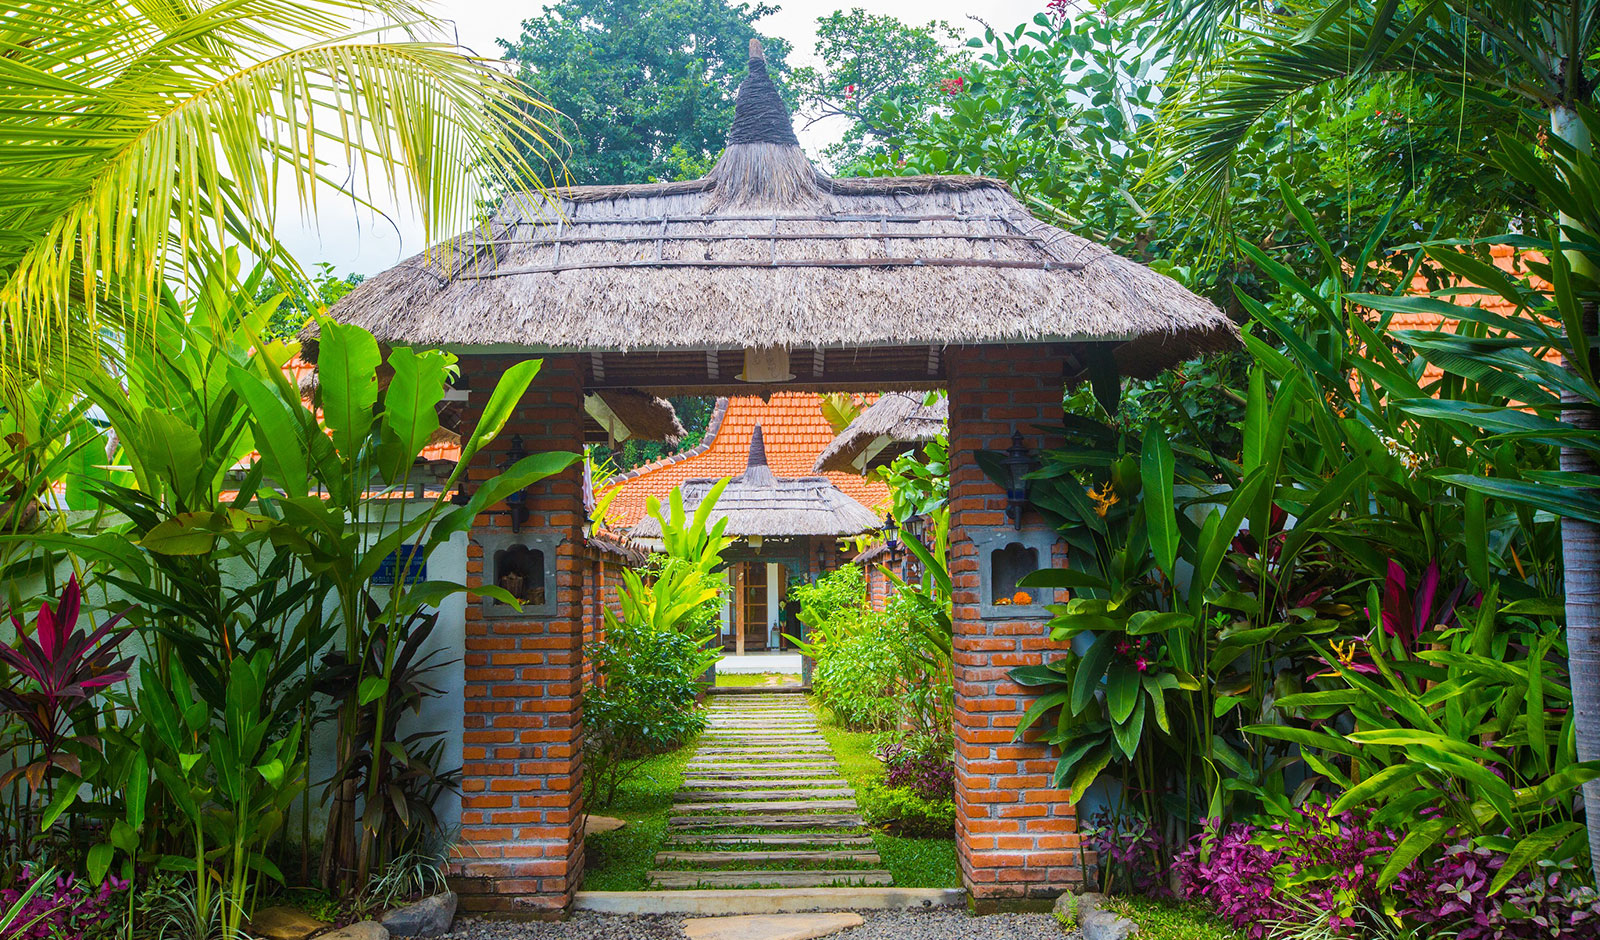 Contact Us: Lata Lama North Bali Villas